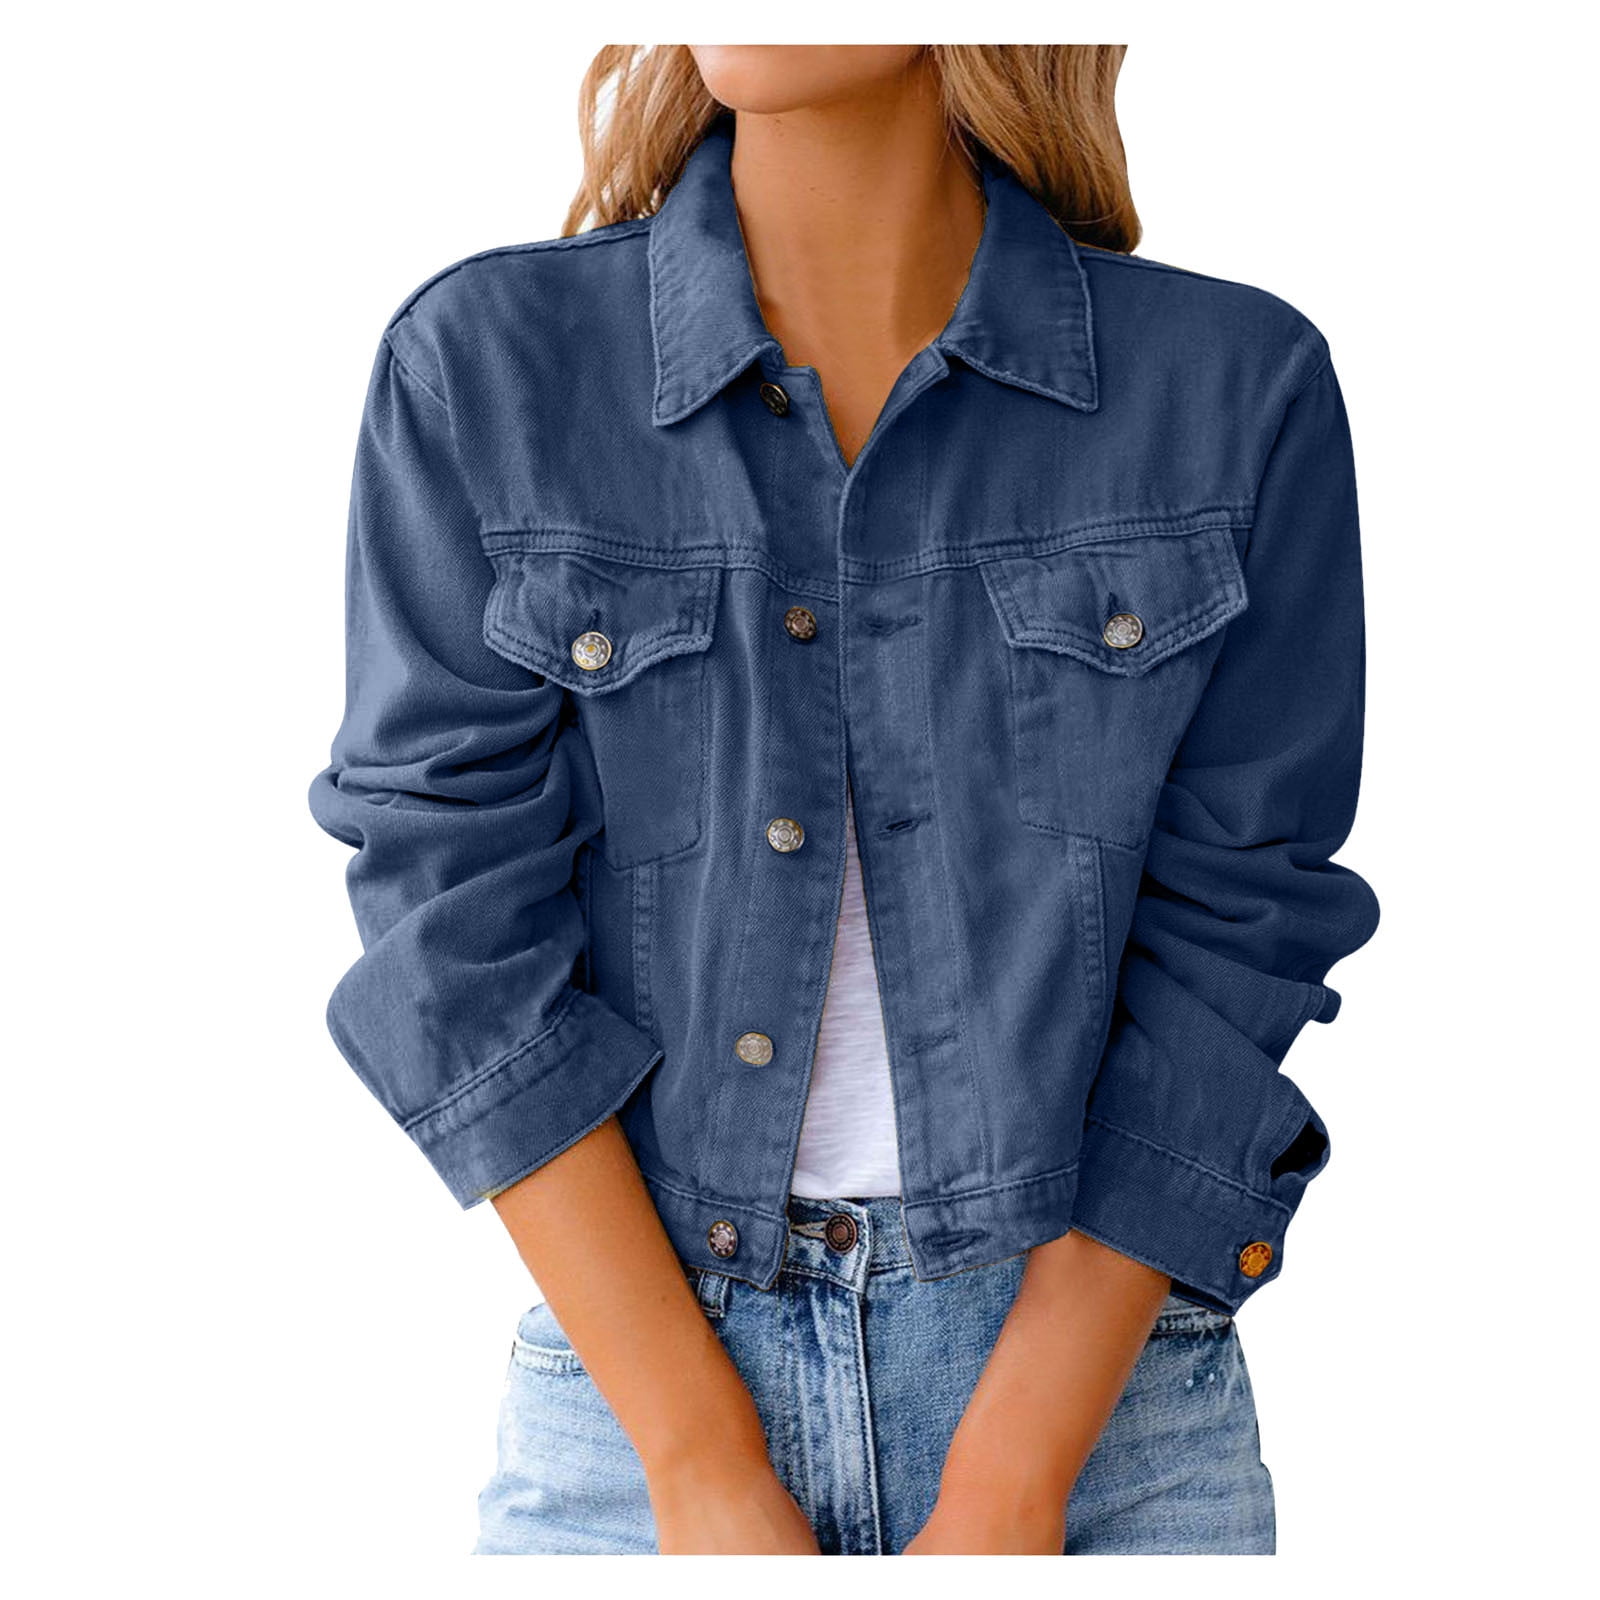 Trending & New Collection Short Denim Jacket For Women & Girls